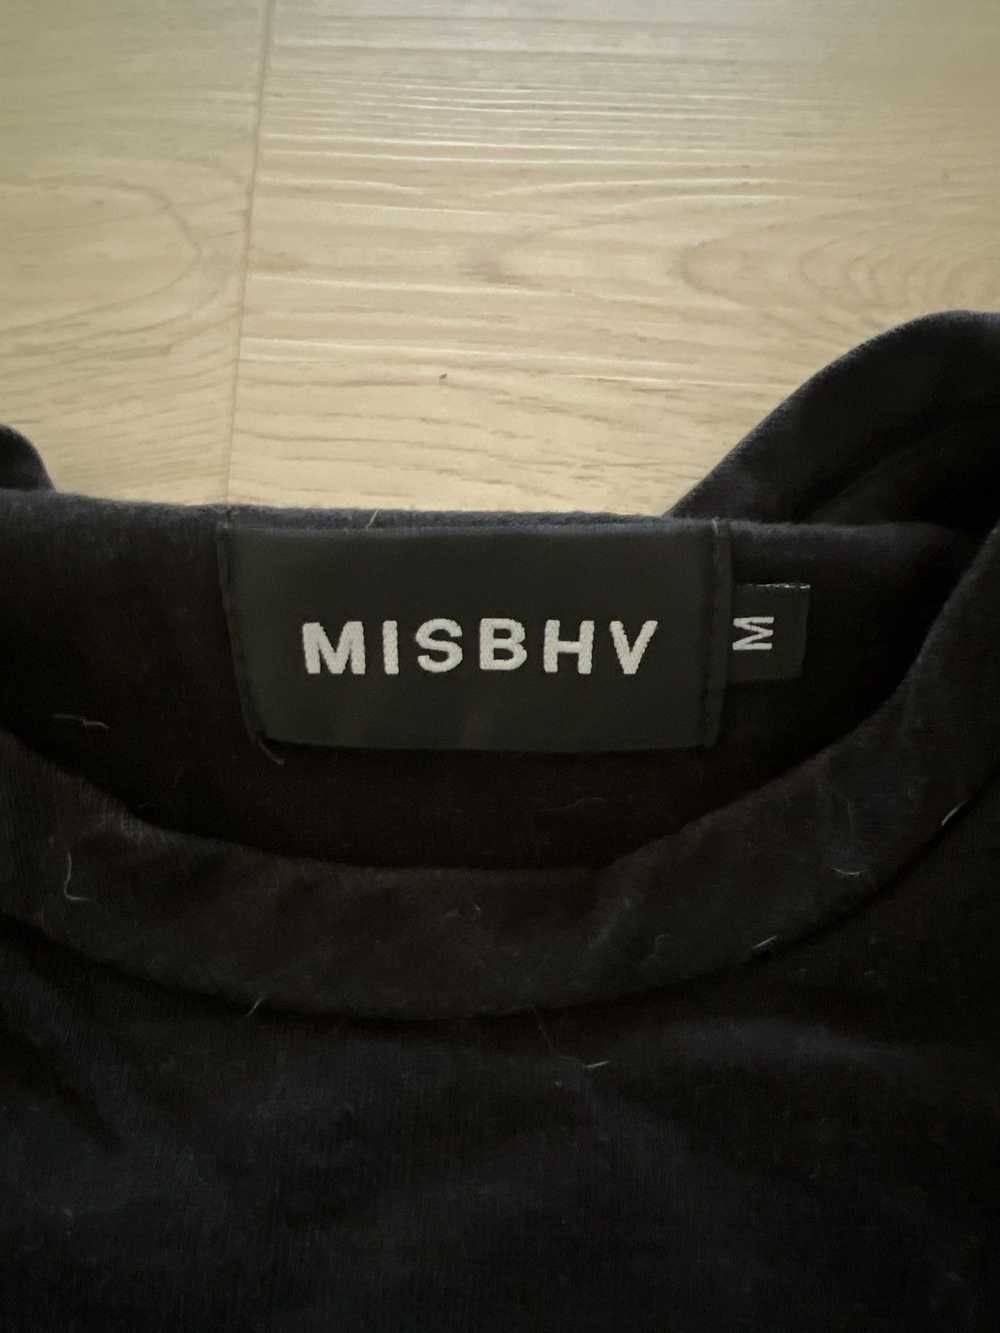 Misbhv MISBHV New Beginnings Shirt Sleeve T-Shirt - image 3